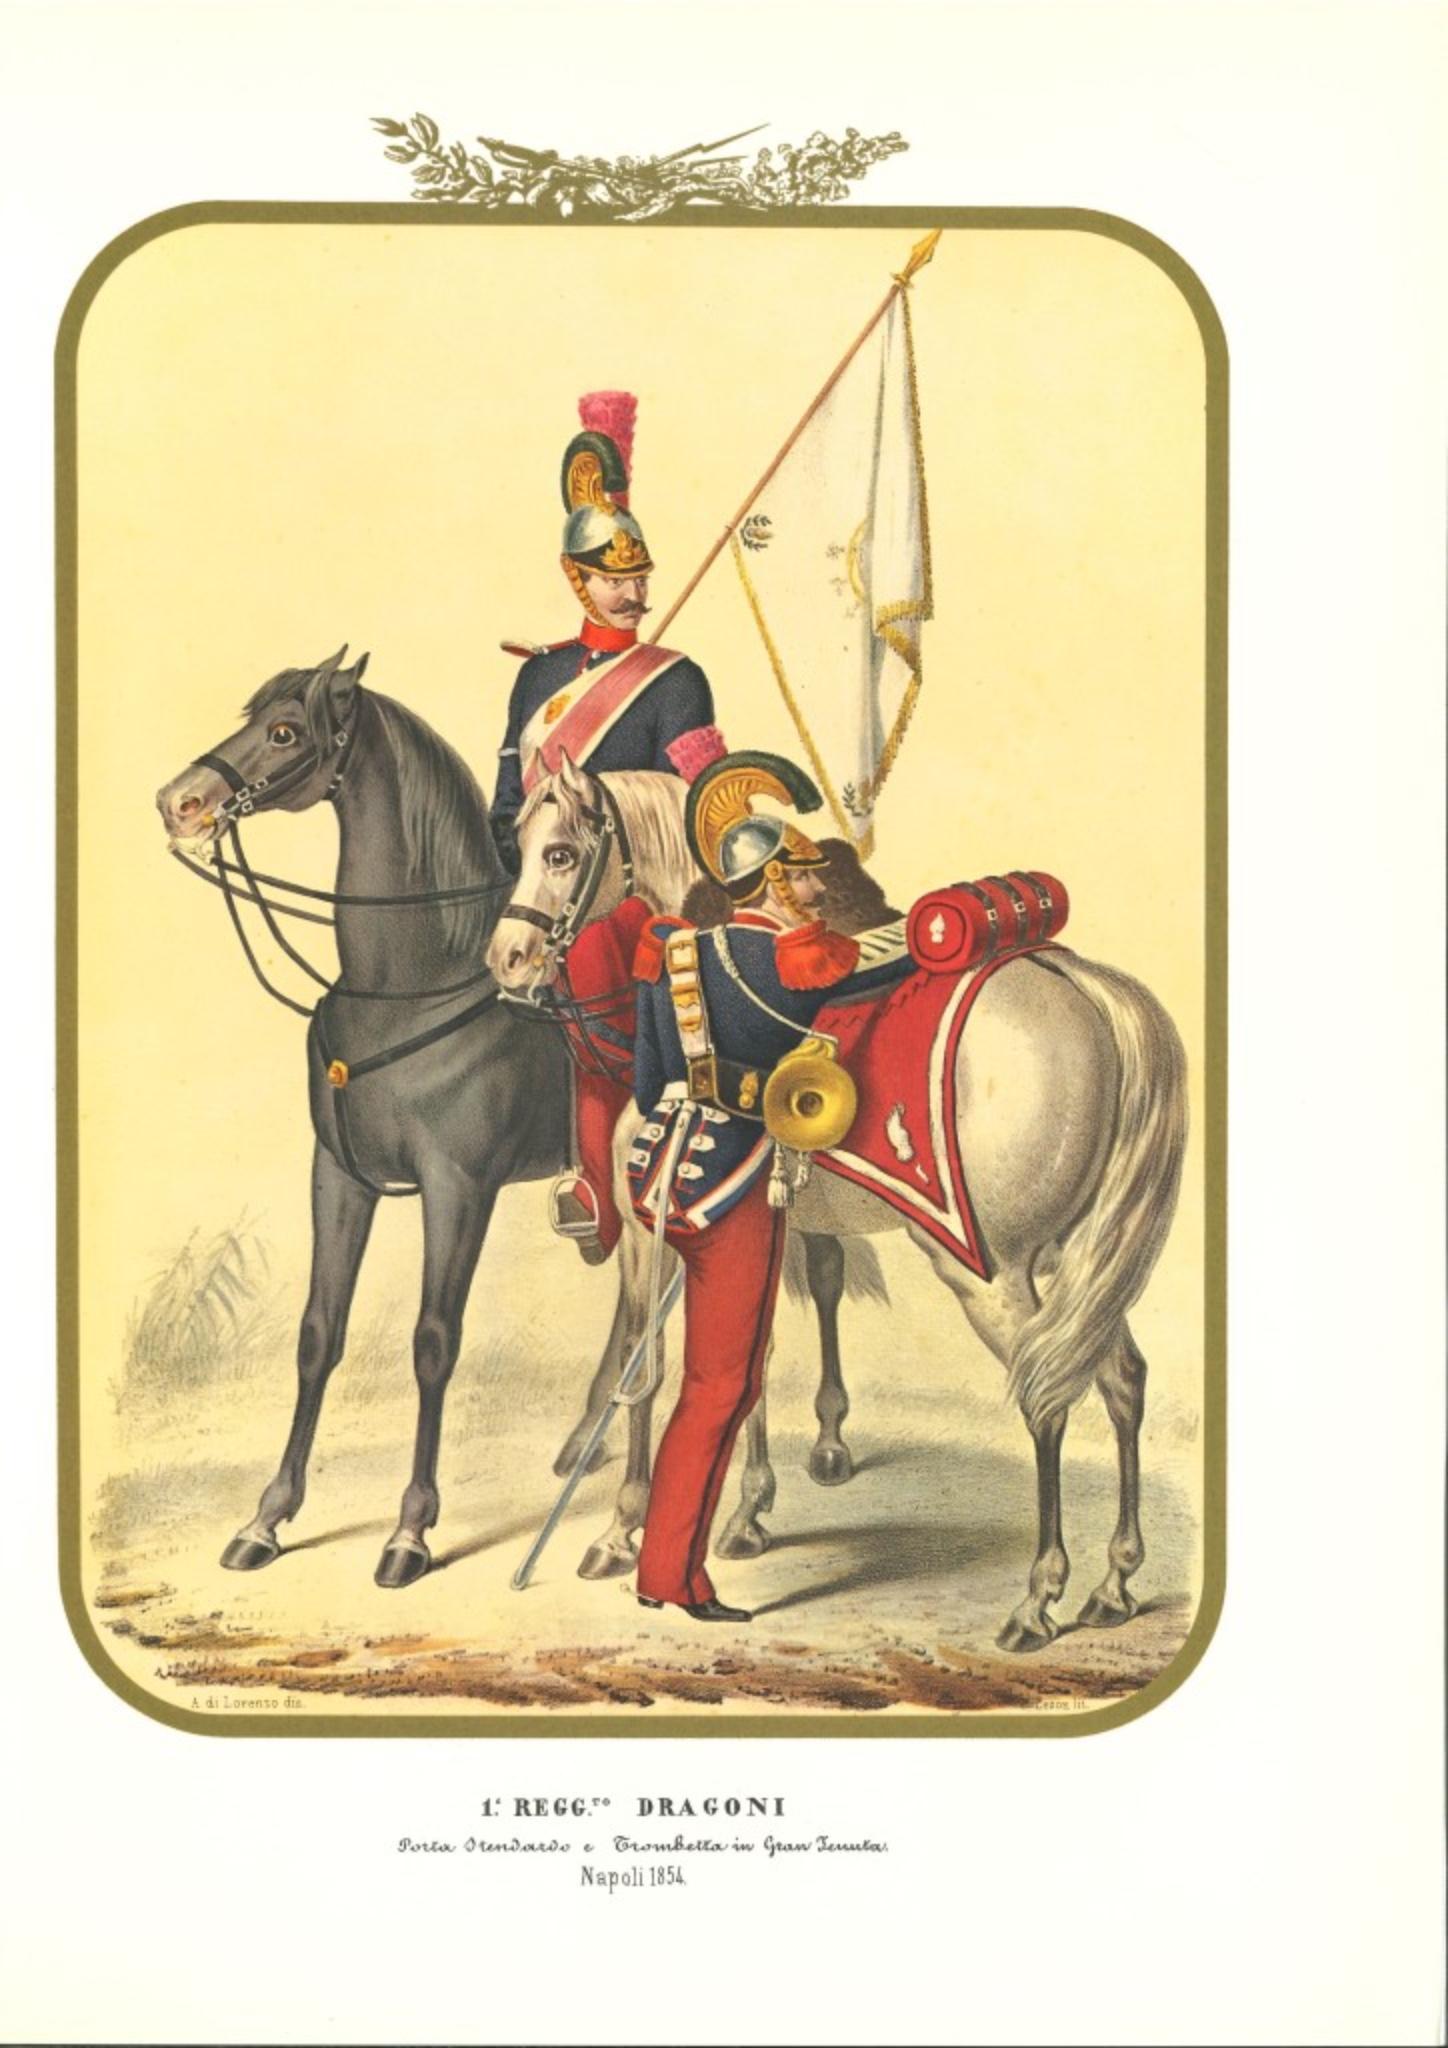 Le Régiment des Dragons est une lithographie d'Antonio Zezon. Naples 1854.

Intéressante lithographie en couleur qui décrit deux membres du régiment des Dragons chevauchant leur cheval : Un porte-drapeau et un trompettiste en tenue d'apparat.

En